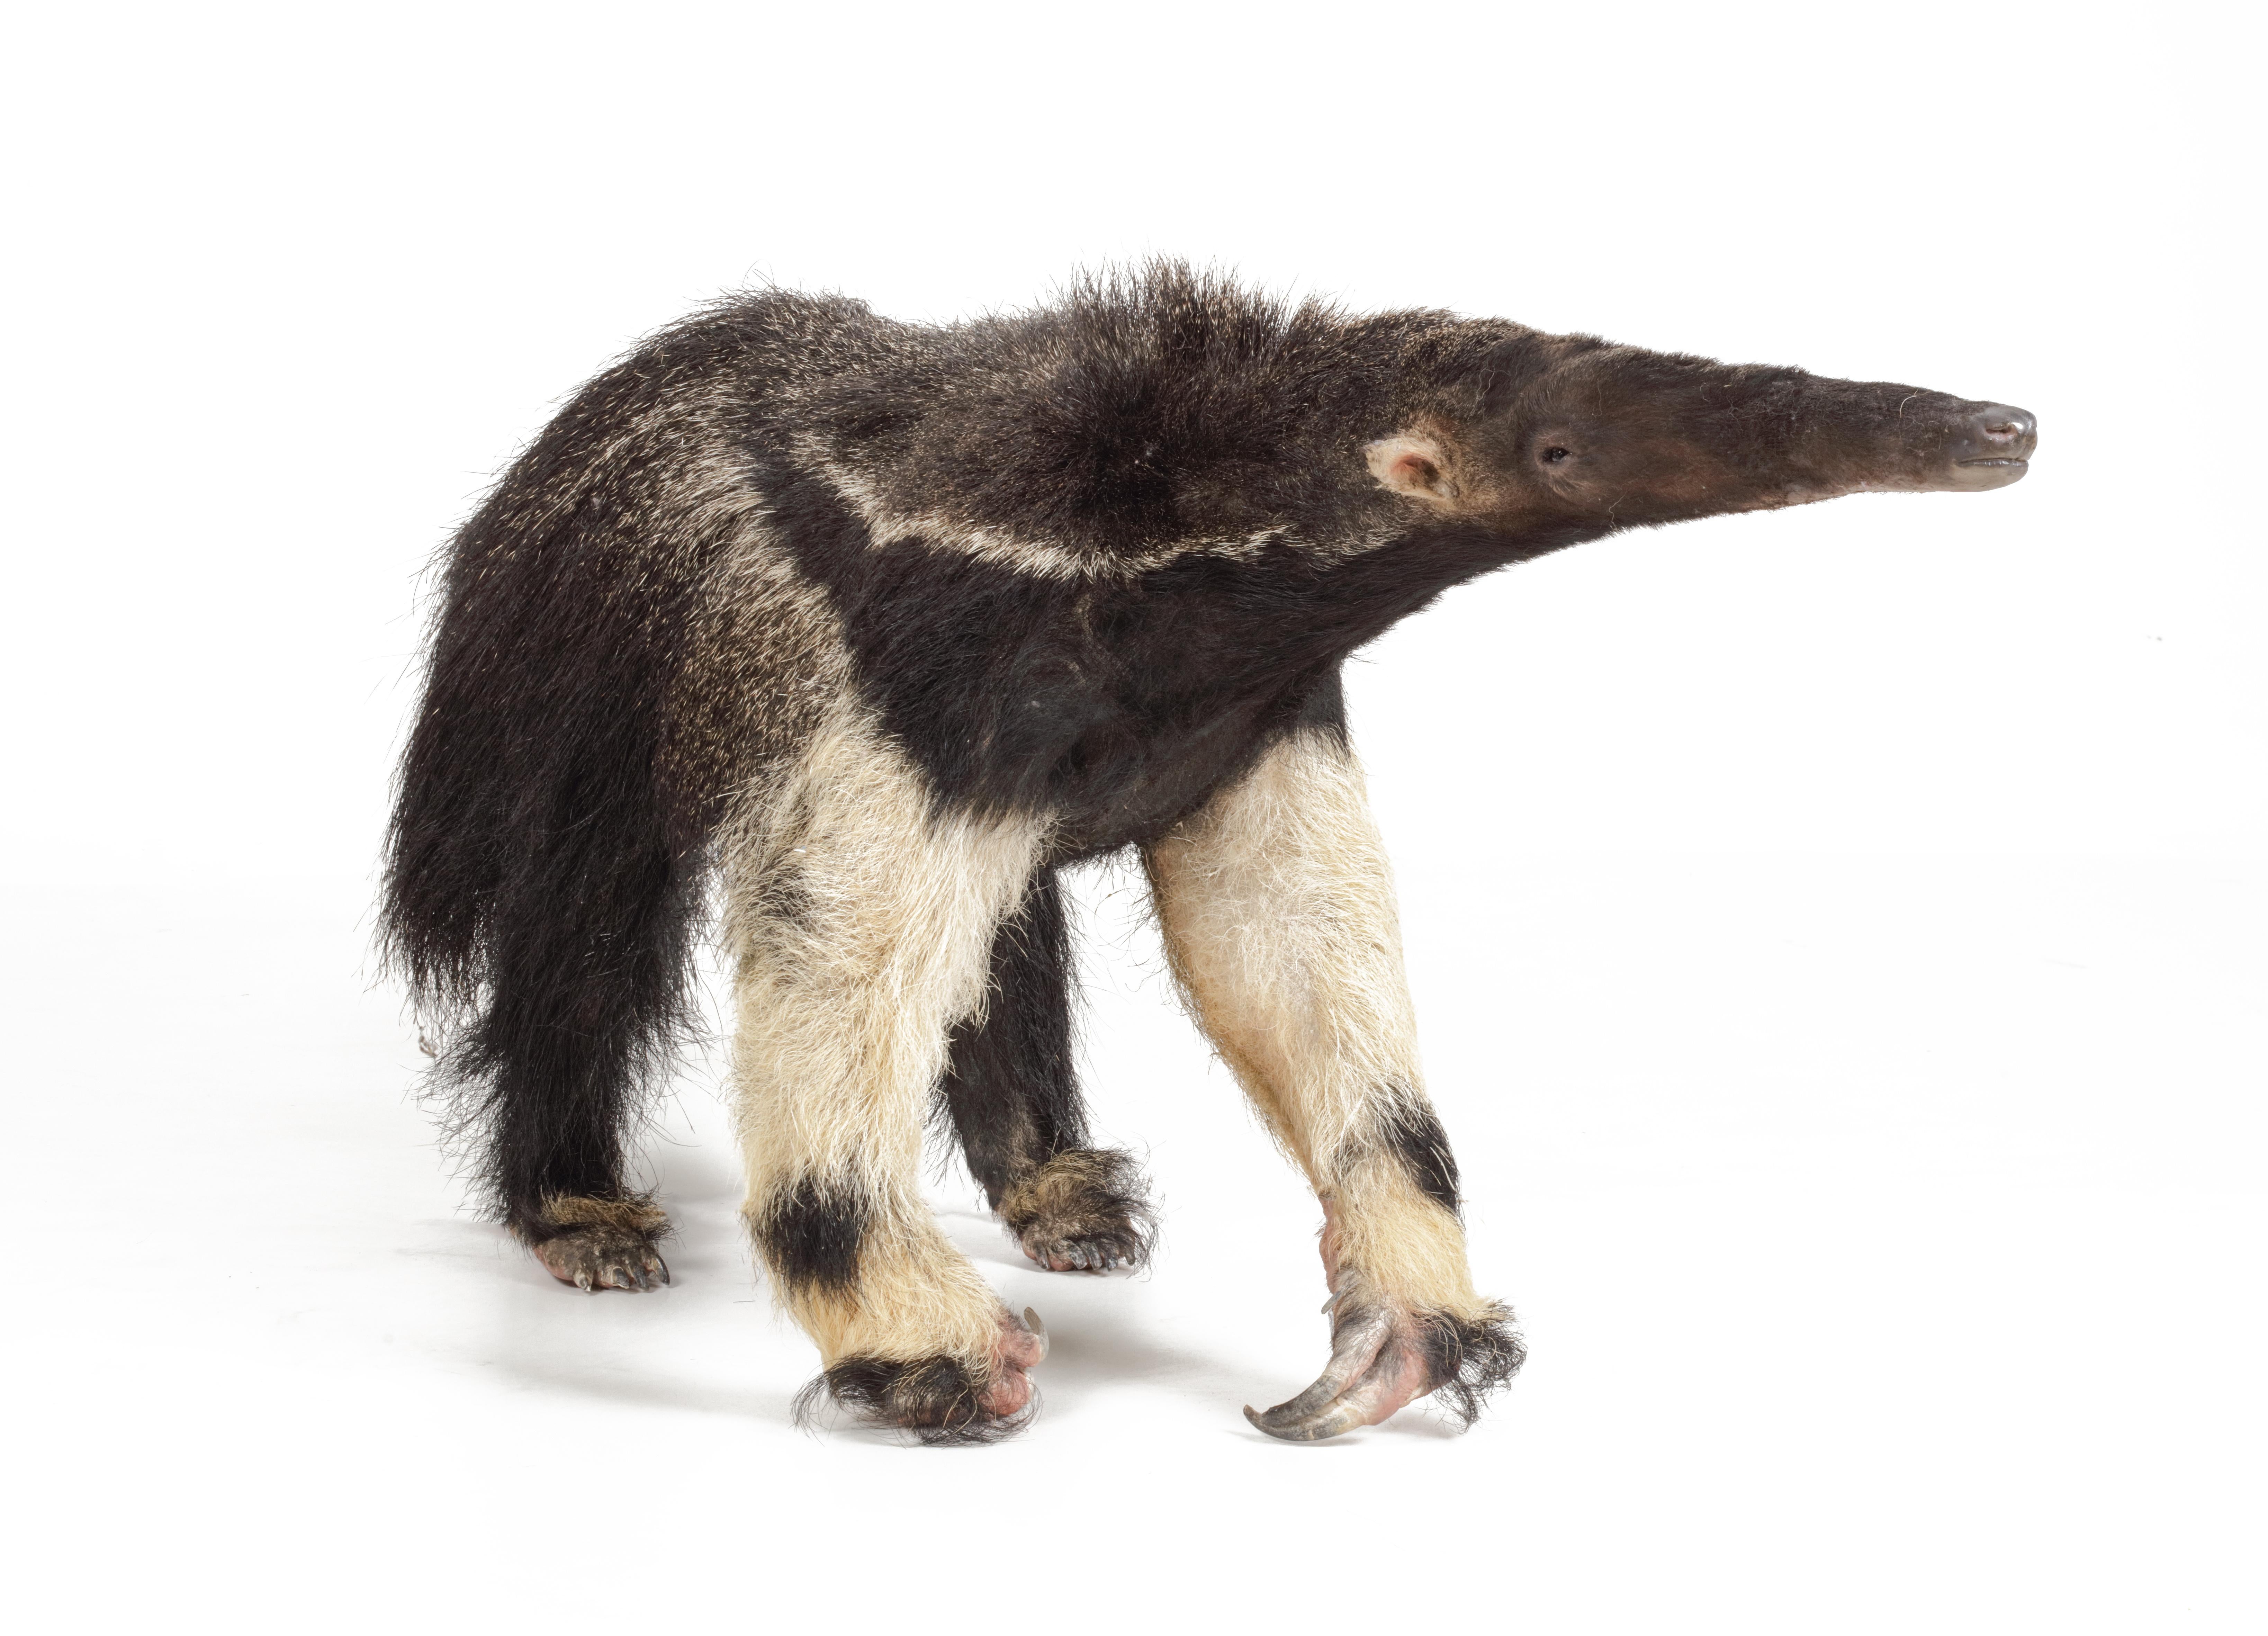 Giant Anteater (Myrmecophaga tridactyla), äußerst seltene antike Tierpräparate

1. Hälfte 20. Jahrhundert
Die wunderbare Kreatur ist in sehr gutem Zustand und von sehr guter Qualität, da es sich um eine kürzlich montierte antike Haut